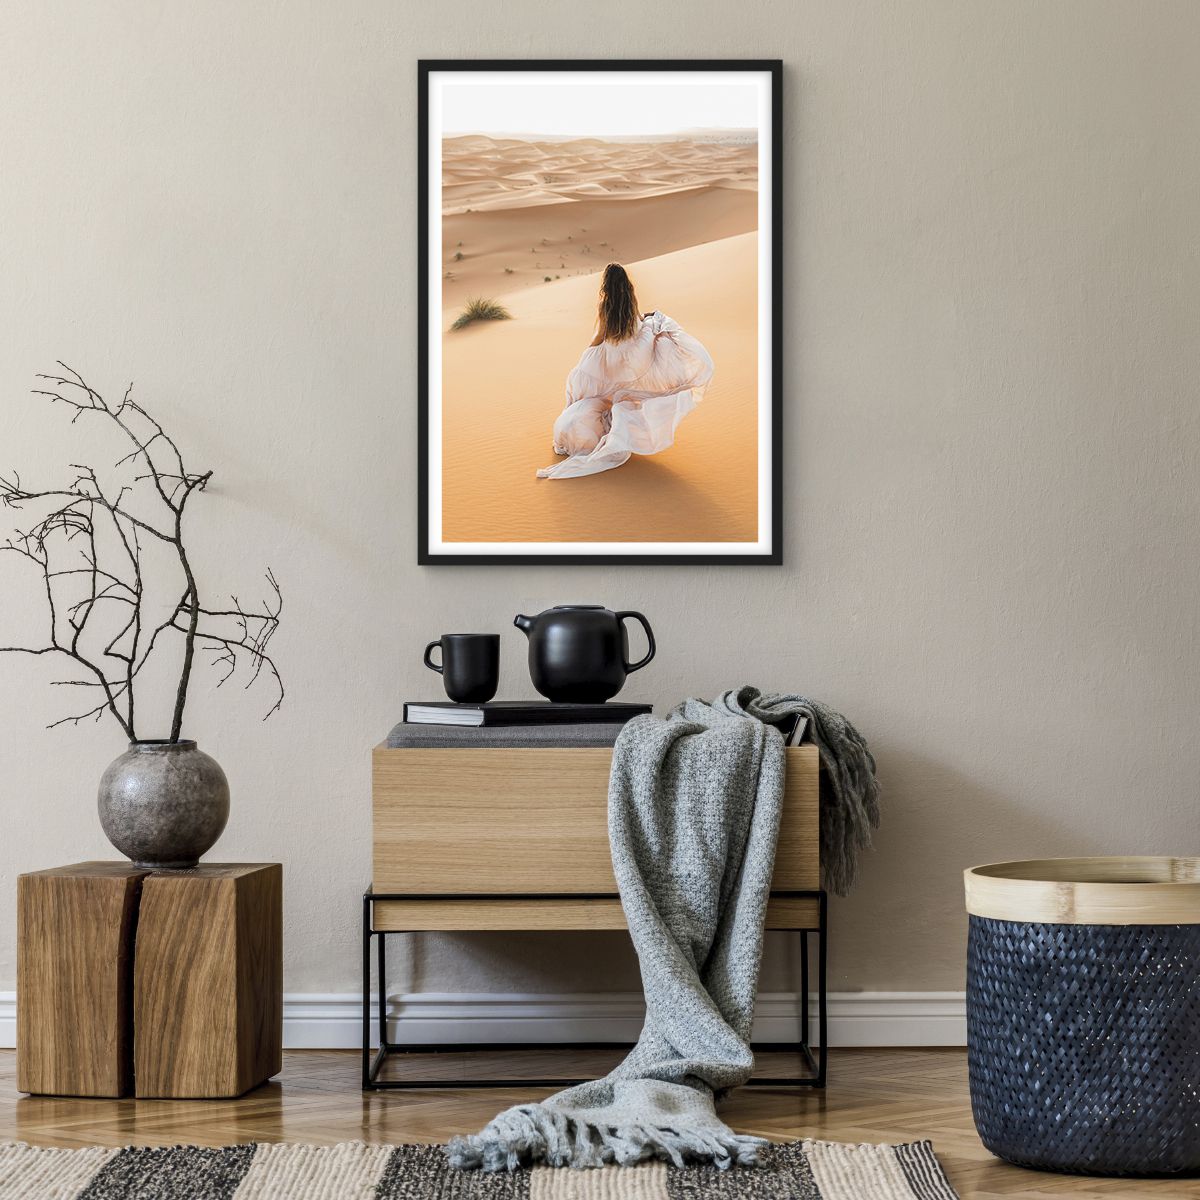 Poster in einem schwarzem Rahmen Wüste, Poster in einem schwarzem Rahmen Landschaft, Poster in einem schwarzem Rahmen Frau, Poster in einem schwarzem Rahmen Modell, Poster in einem schwarzem Rahmen Sahara